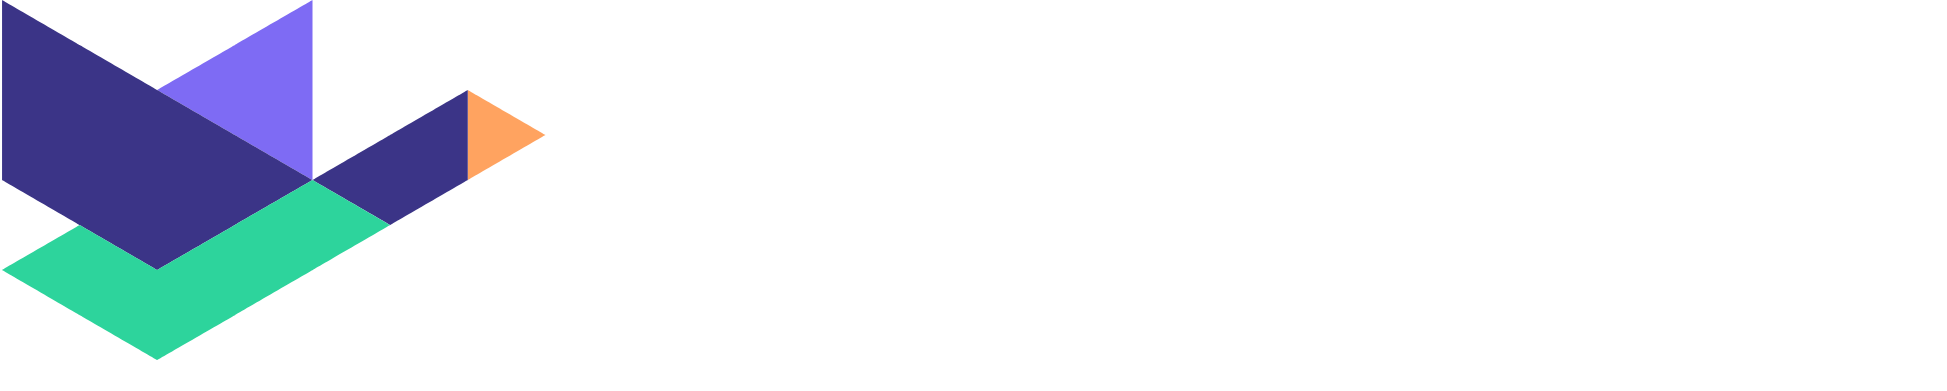 Duck Creek Technologies logo grand pour les fonds sombres (PNG transparent)